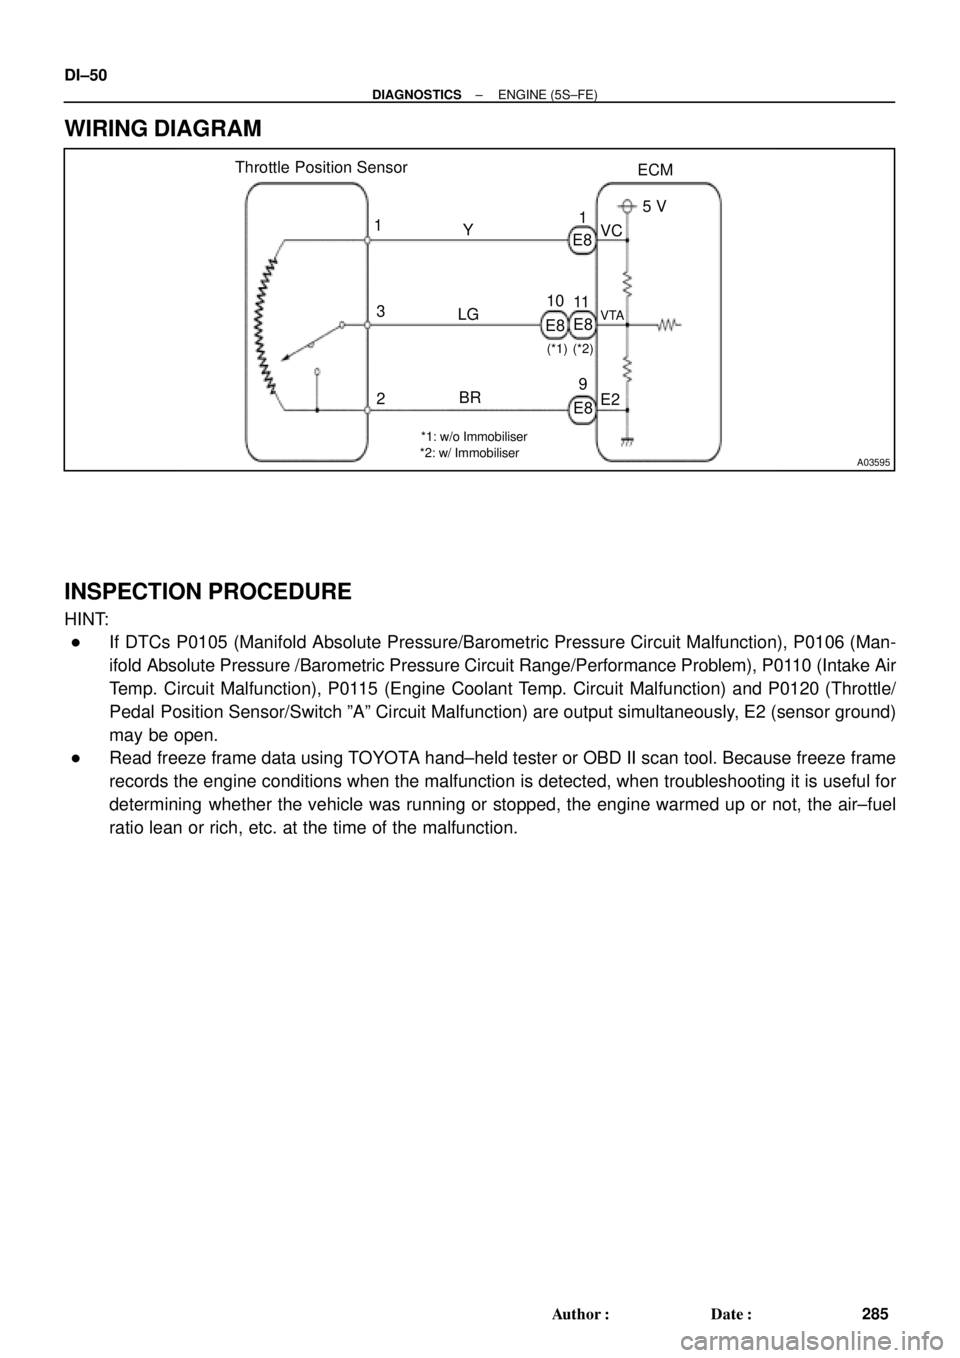 TOYOTA CAMRY 1999  Service Repair Manual A03595
Throttle Position Sensor
ECM
E8
E8 1
3
2Y
LG
BR1
11
9VC
VTA
E25 V
*1: w/o Immobiliser
*2: w/ Immobiliser(*2)
E8 E810
(*1)
DI±50
± DIAGNOSTICSENGINE (5S±FE)
285 Author: Date:
WIRING DIAGRAM